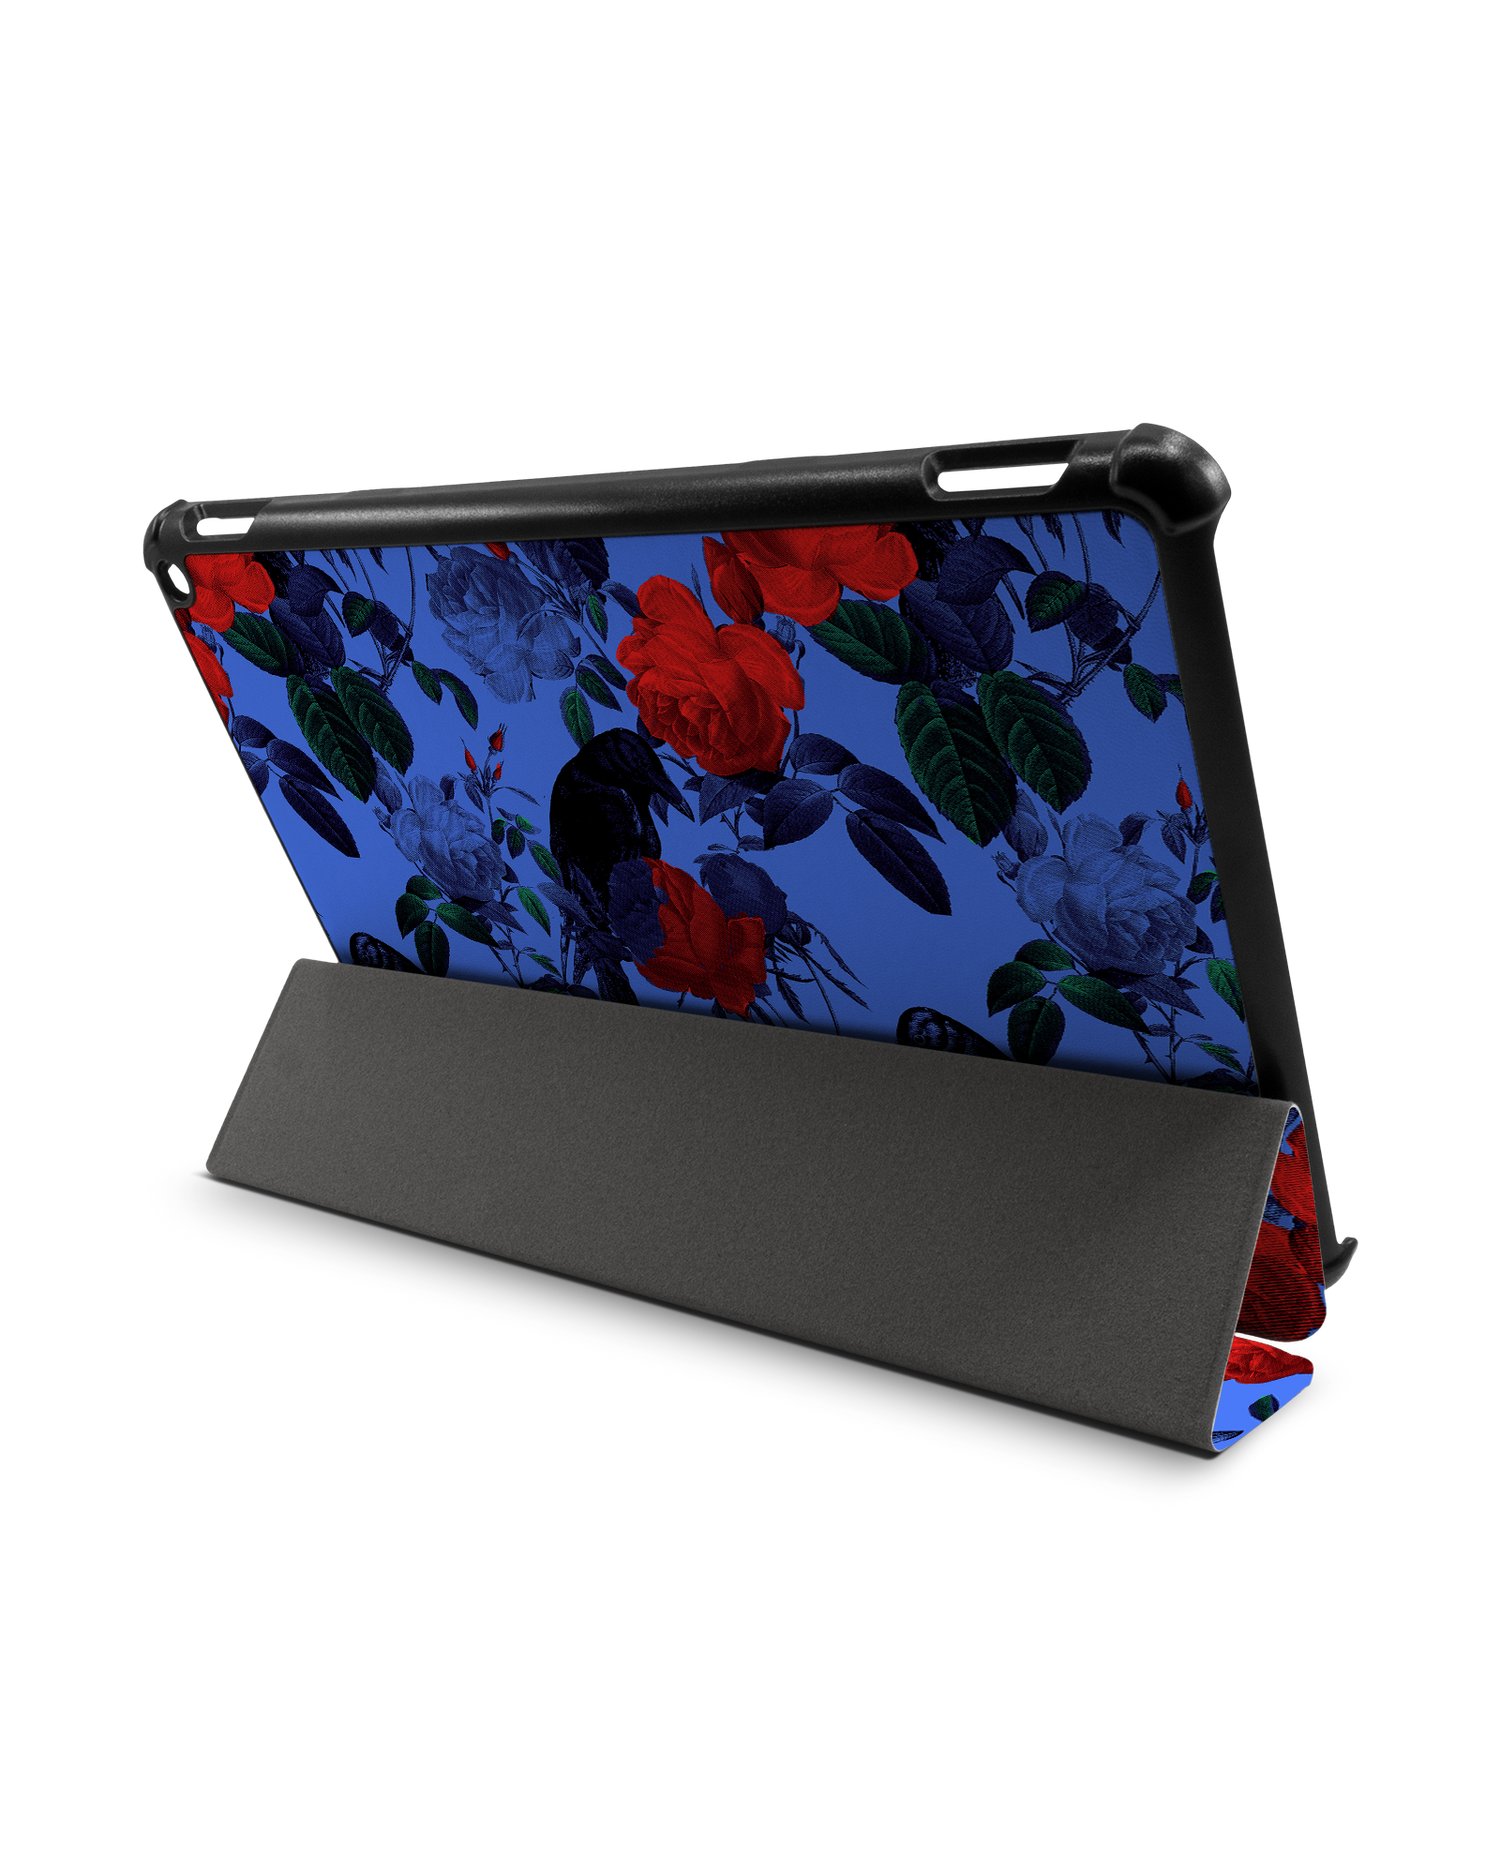 Roses And Ravens Tablet Smart Case für Amazon Fire HD 10 (2021): Aufgestellt im Querformat